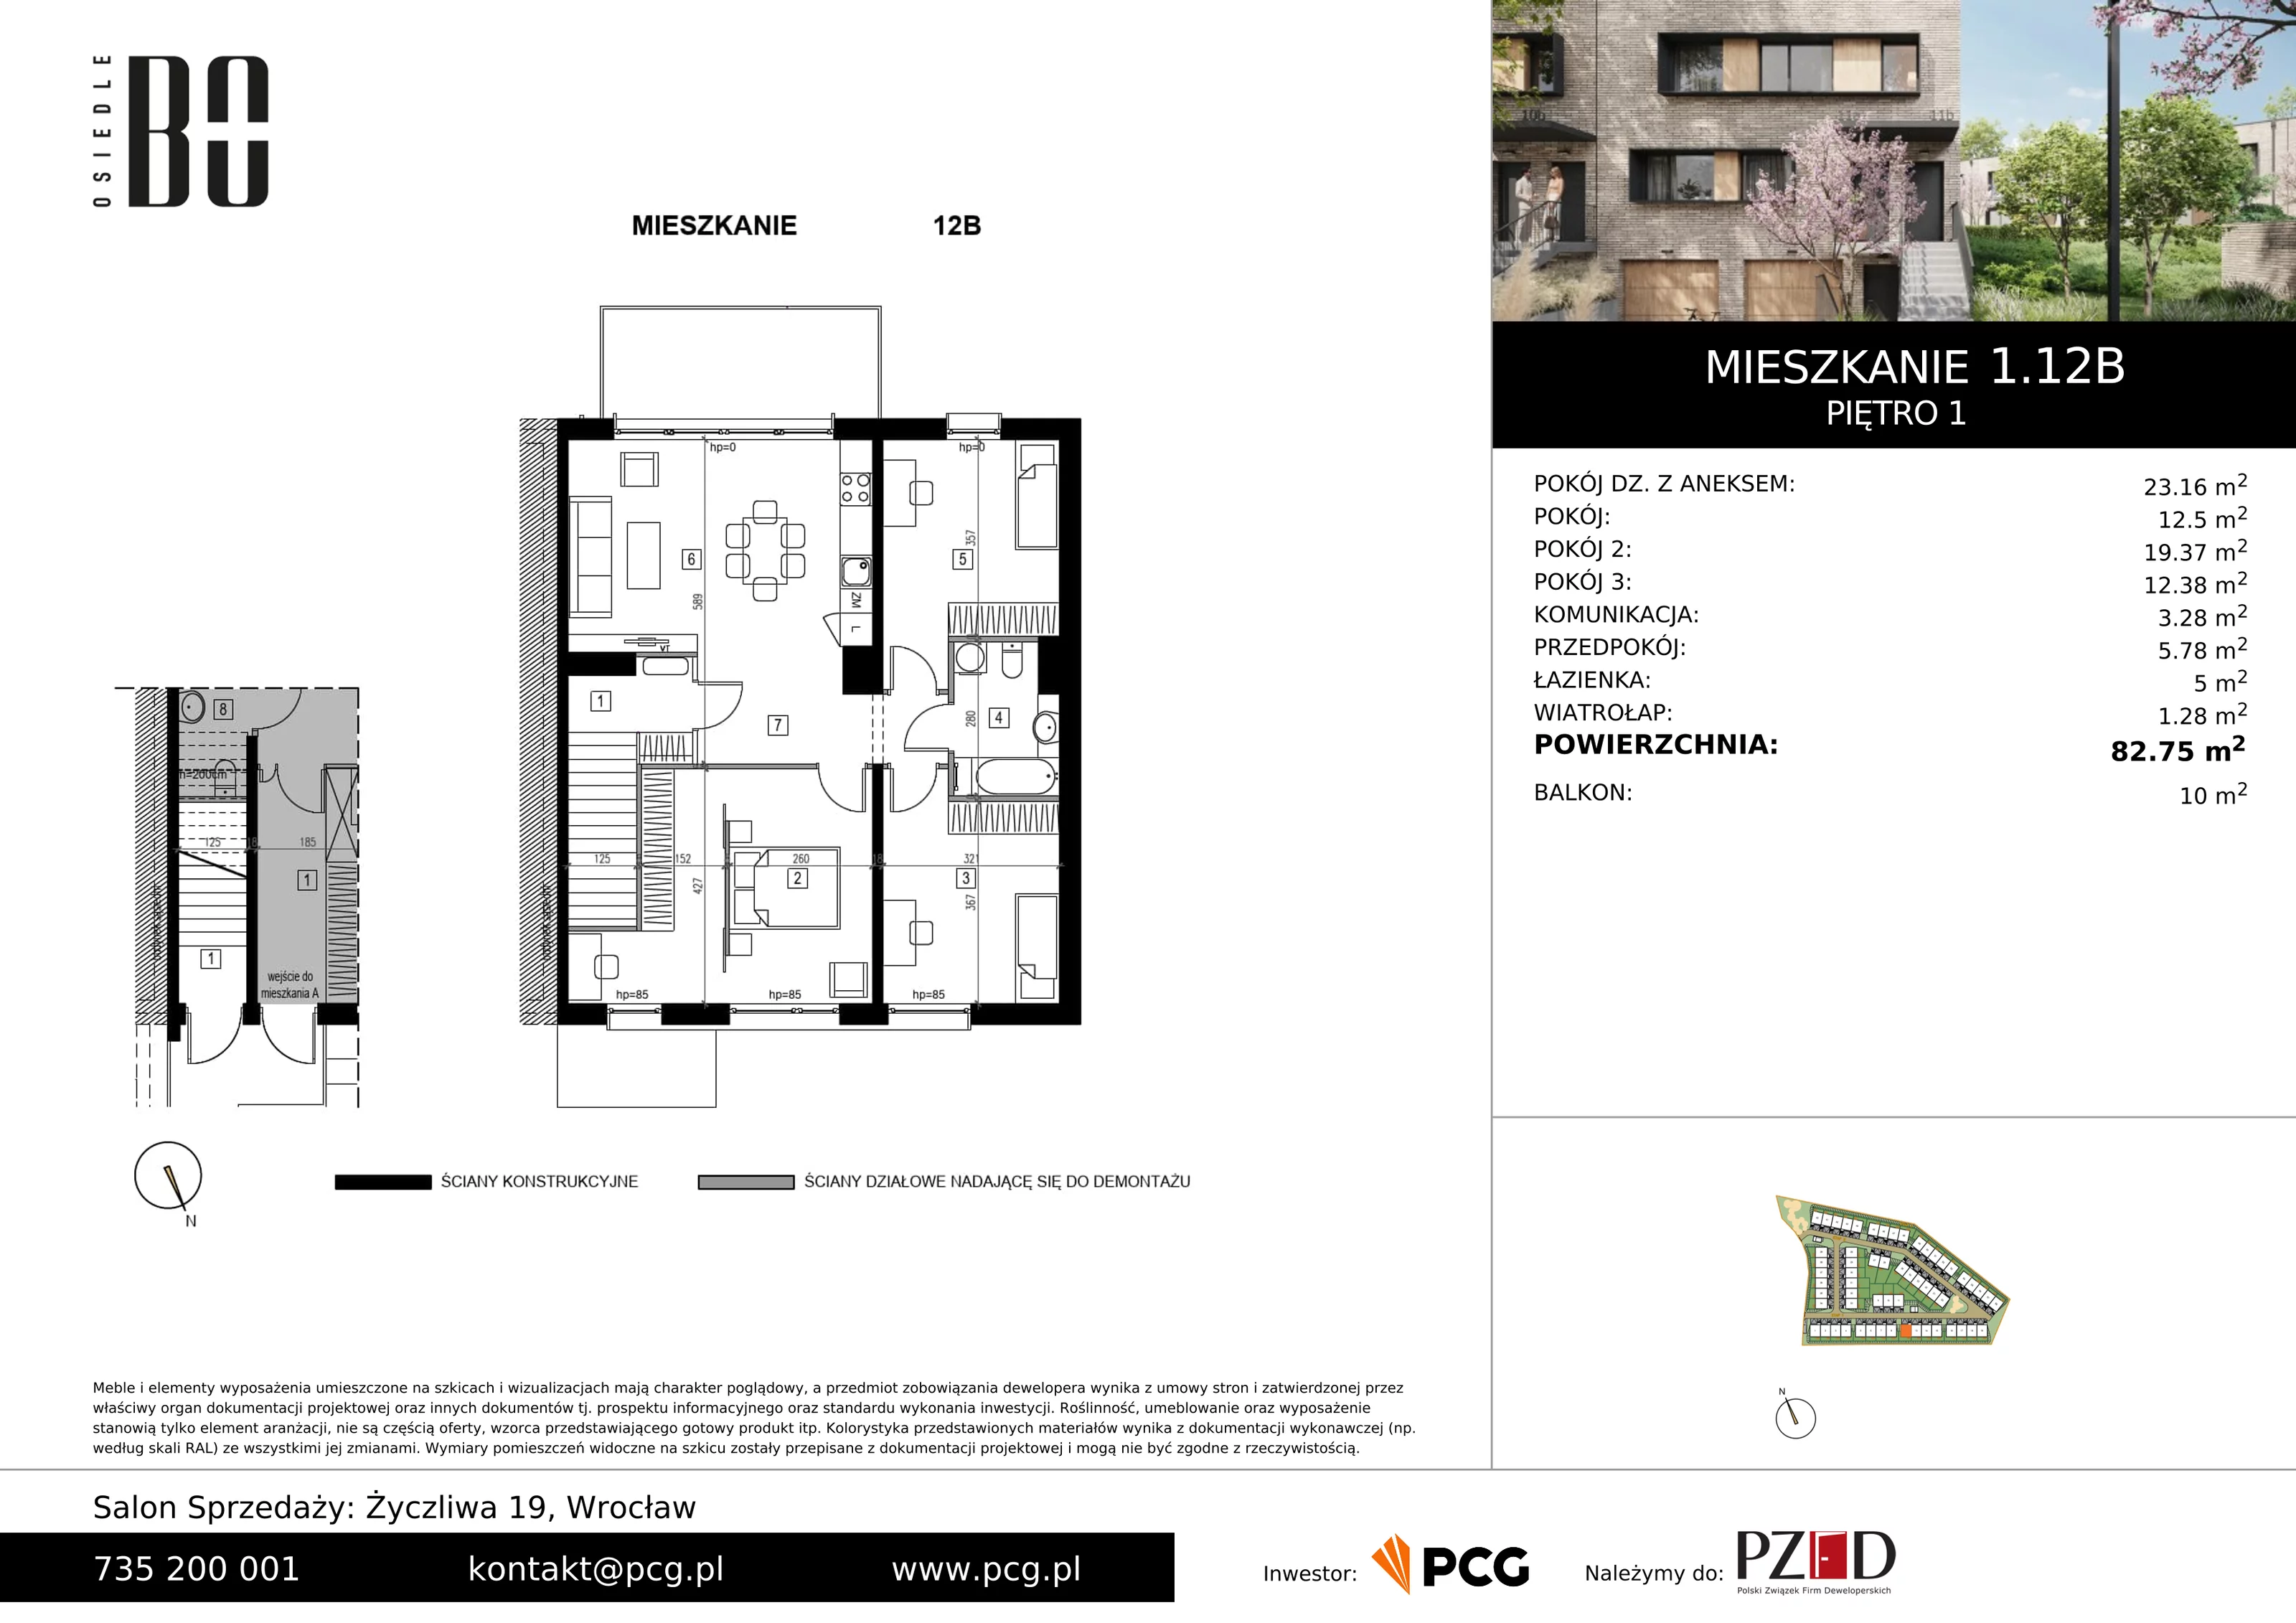 Apartament 82,75 m², piętro 1, oferta nr 1.12B, Osiedle BO, Wrocław, Kowale, ul. Bociana